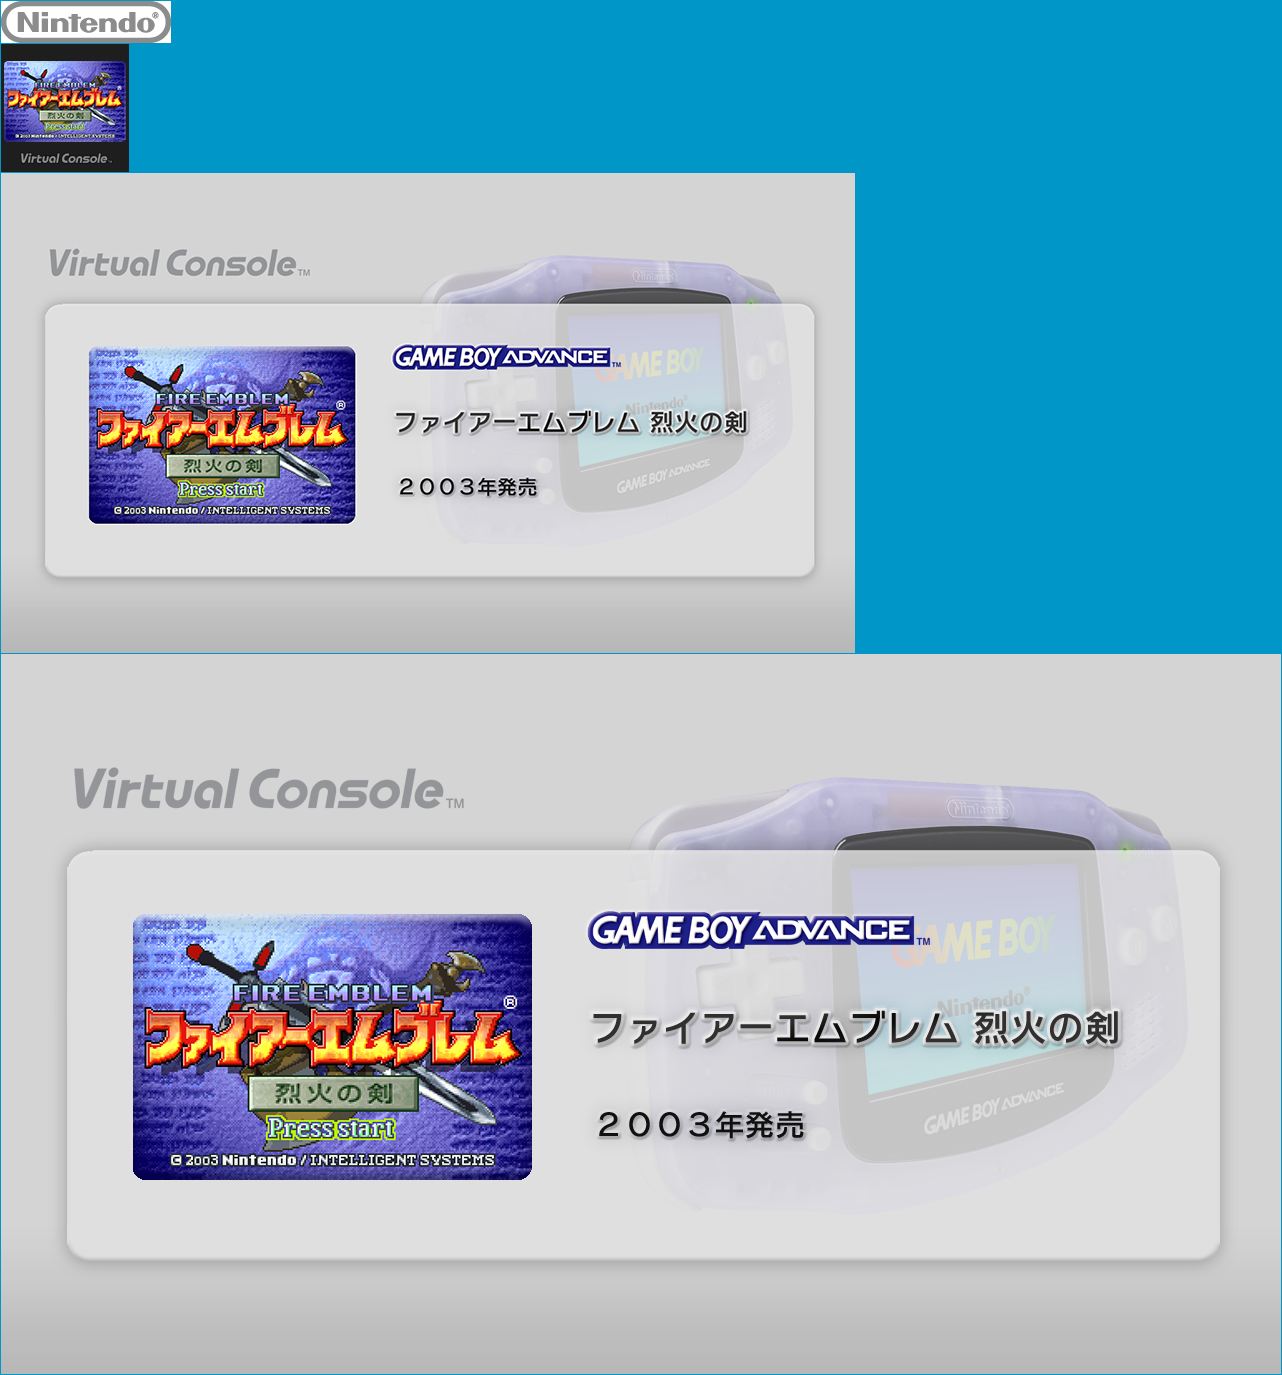 Virtual Console - Fire Emblem: Rekka no Ken